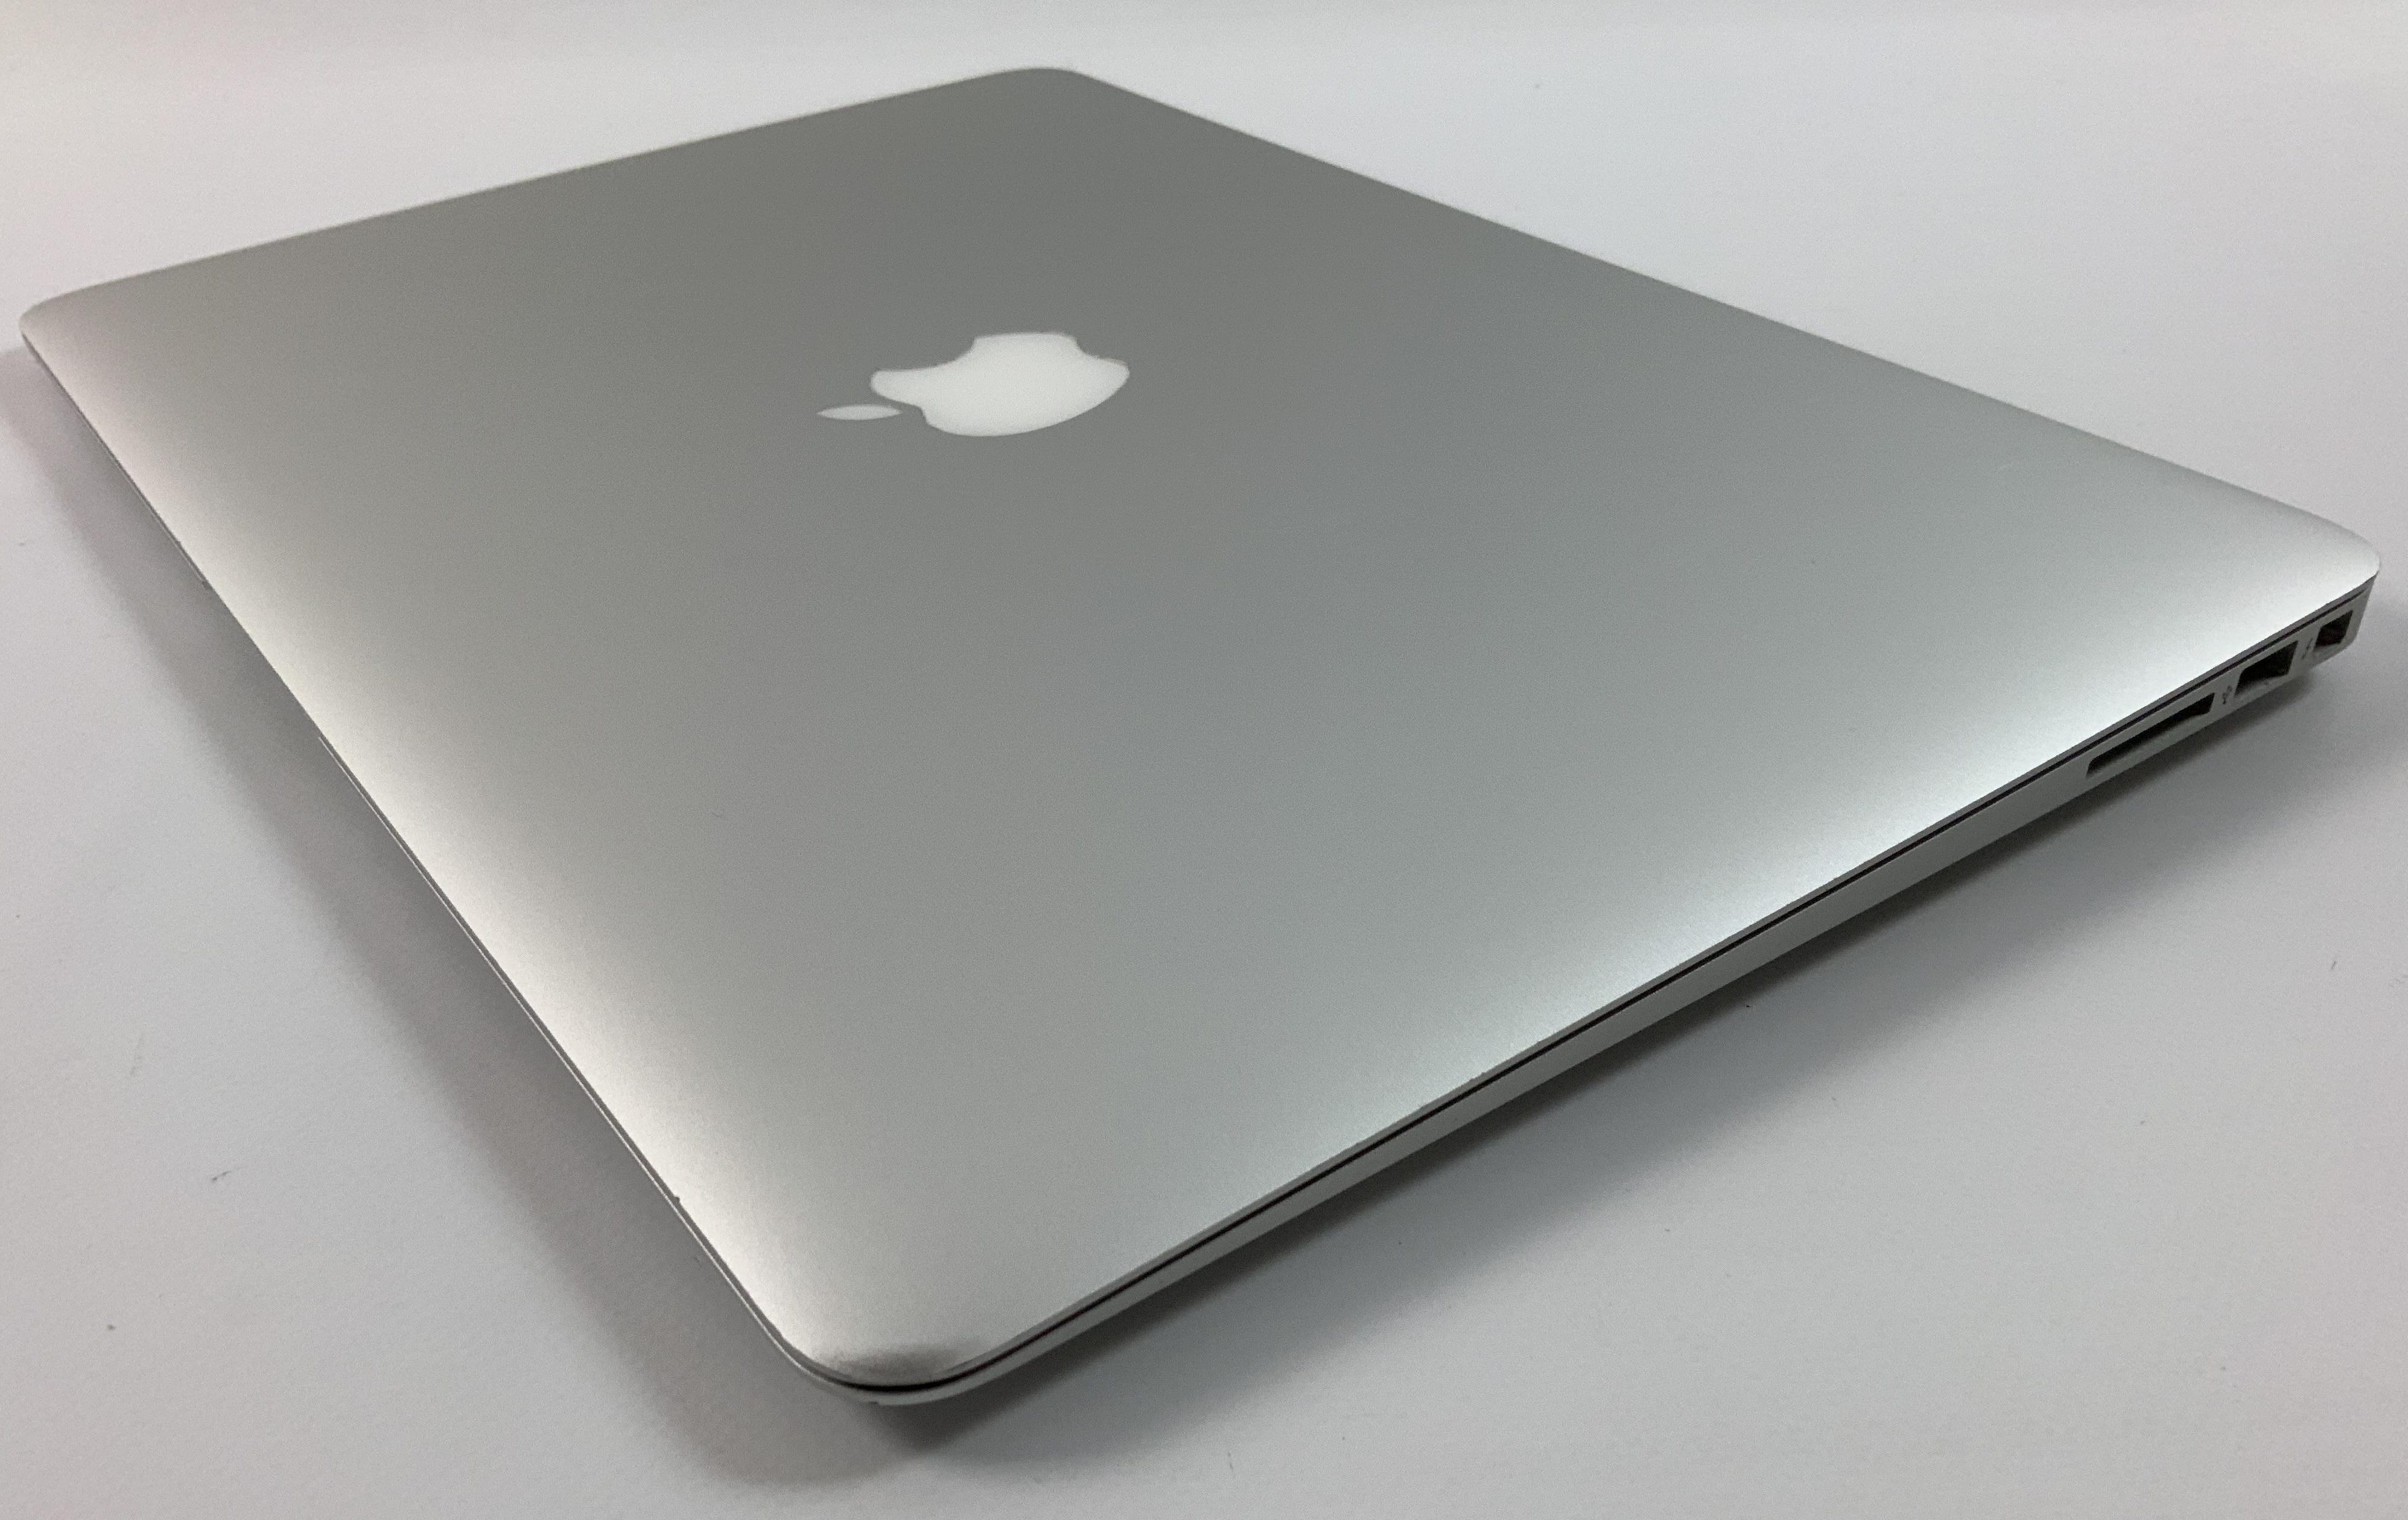 MacBook Air 13" Mid 2017 (Intel Core i5 1.8 GHz 8 GB RAM 256 GB SSD), Intel Core i5 1.8 GHz, 8 GB RAM, 256 GB SSD, obraz 3